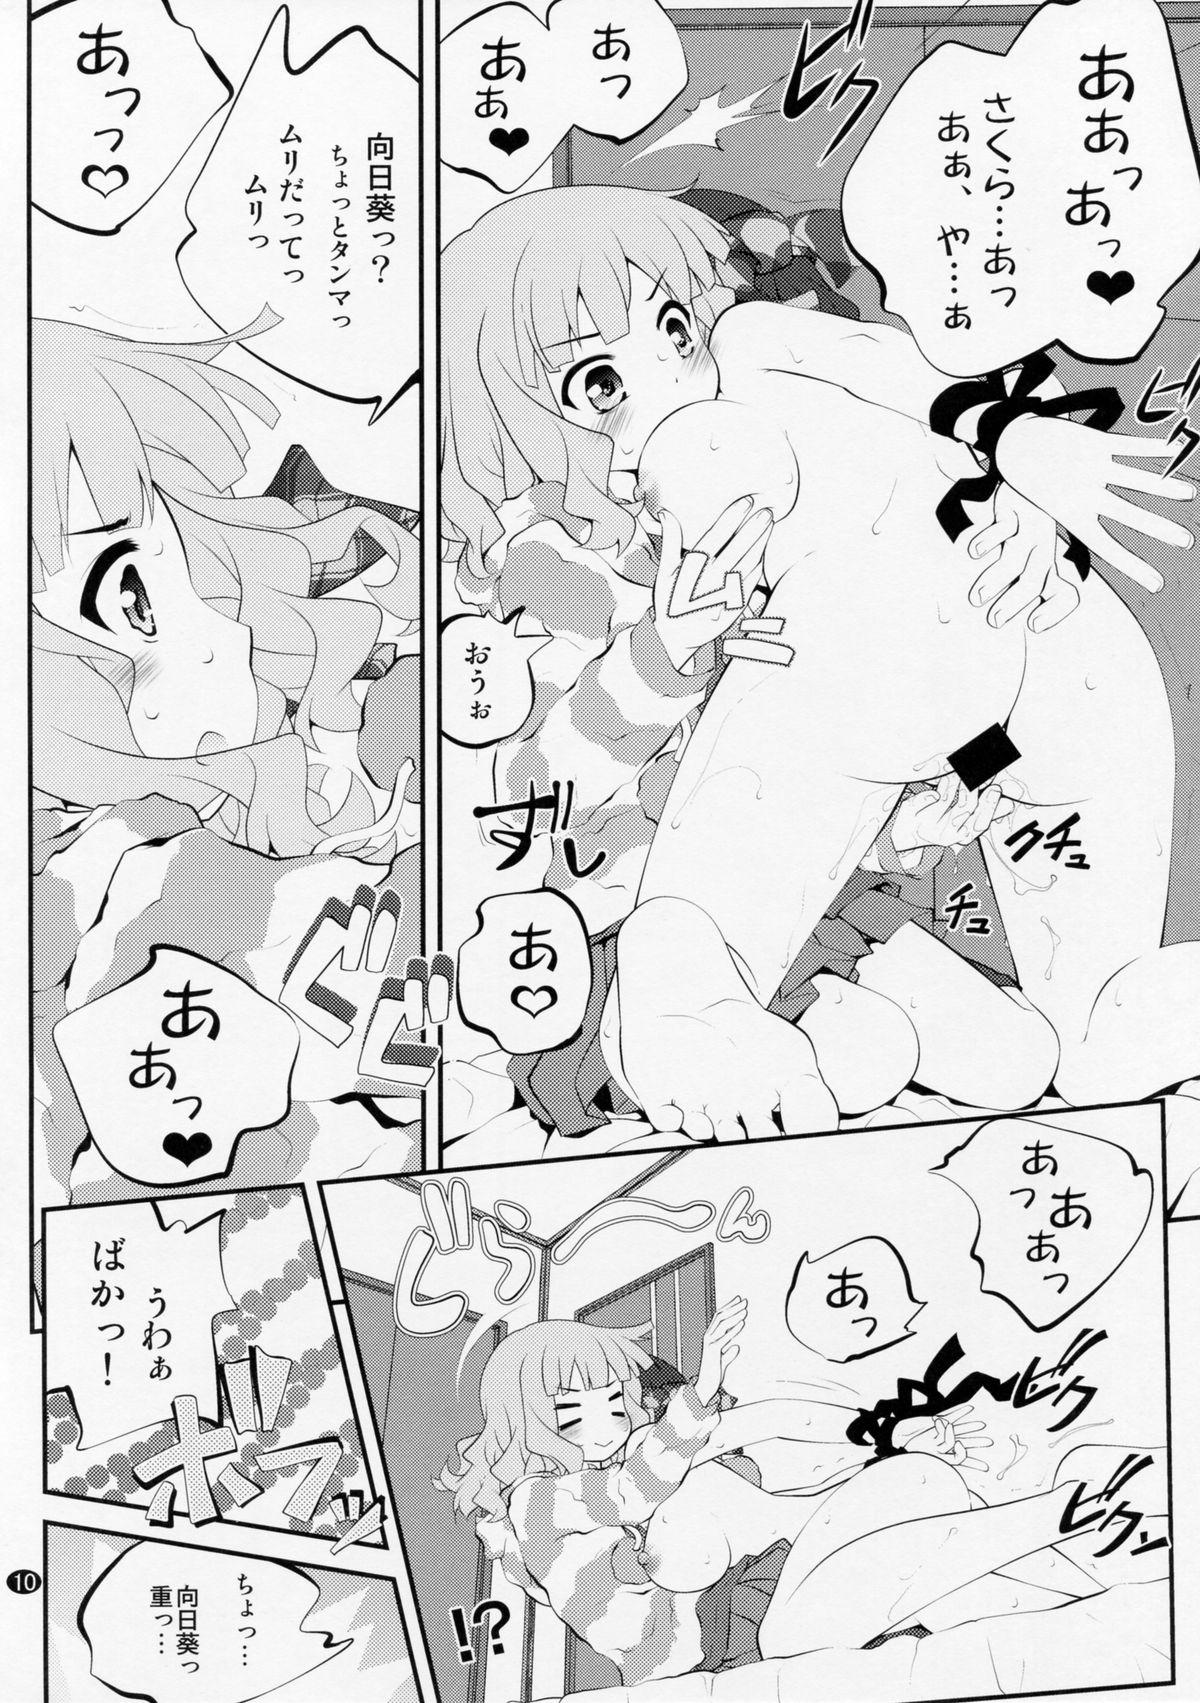 Pau Himegoto Flowers 8 - Yuruyuri Gang - Page 9